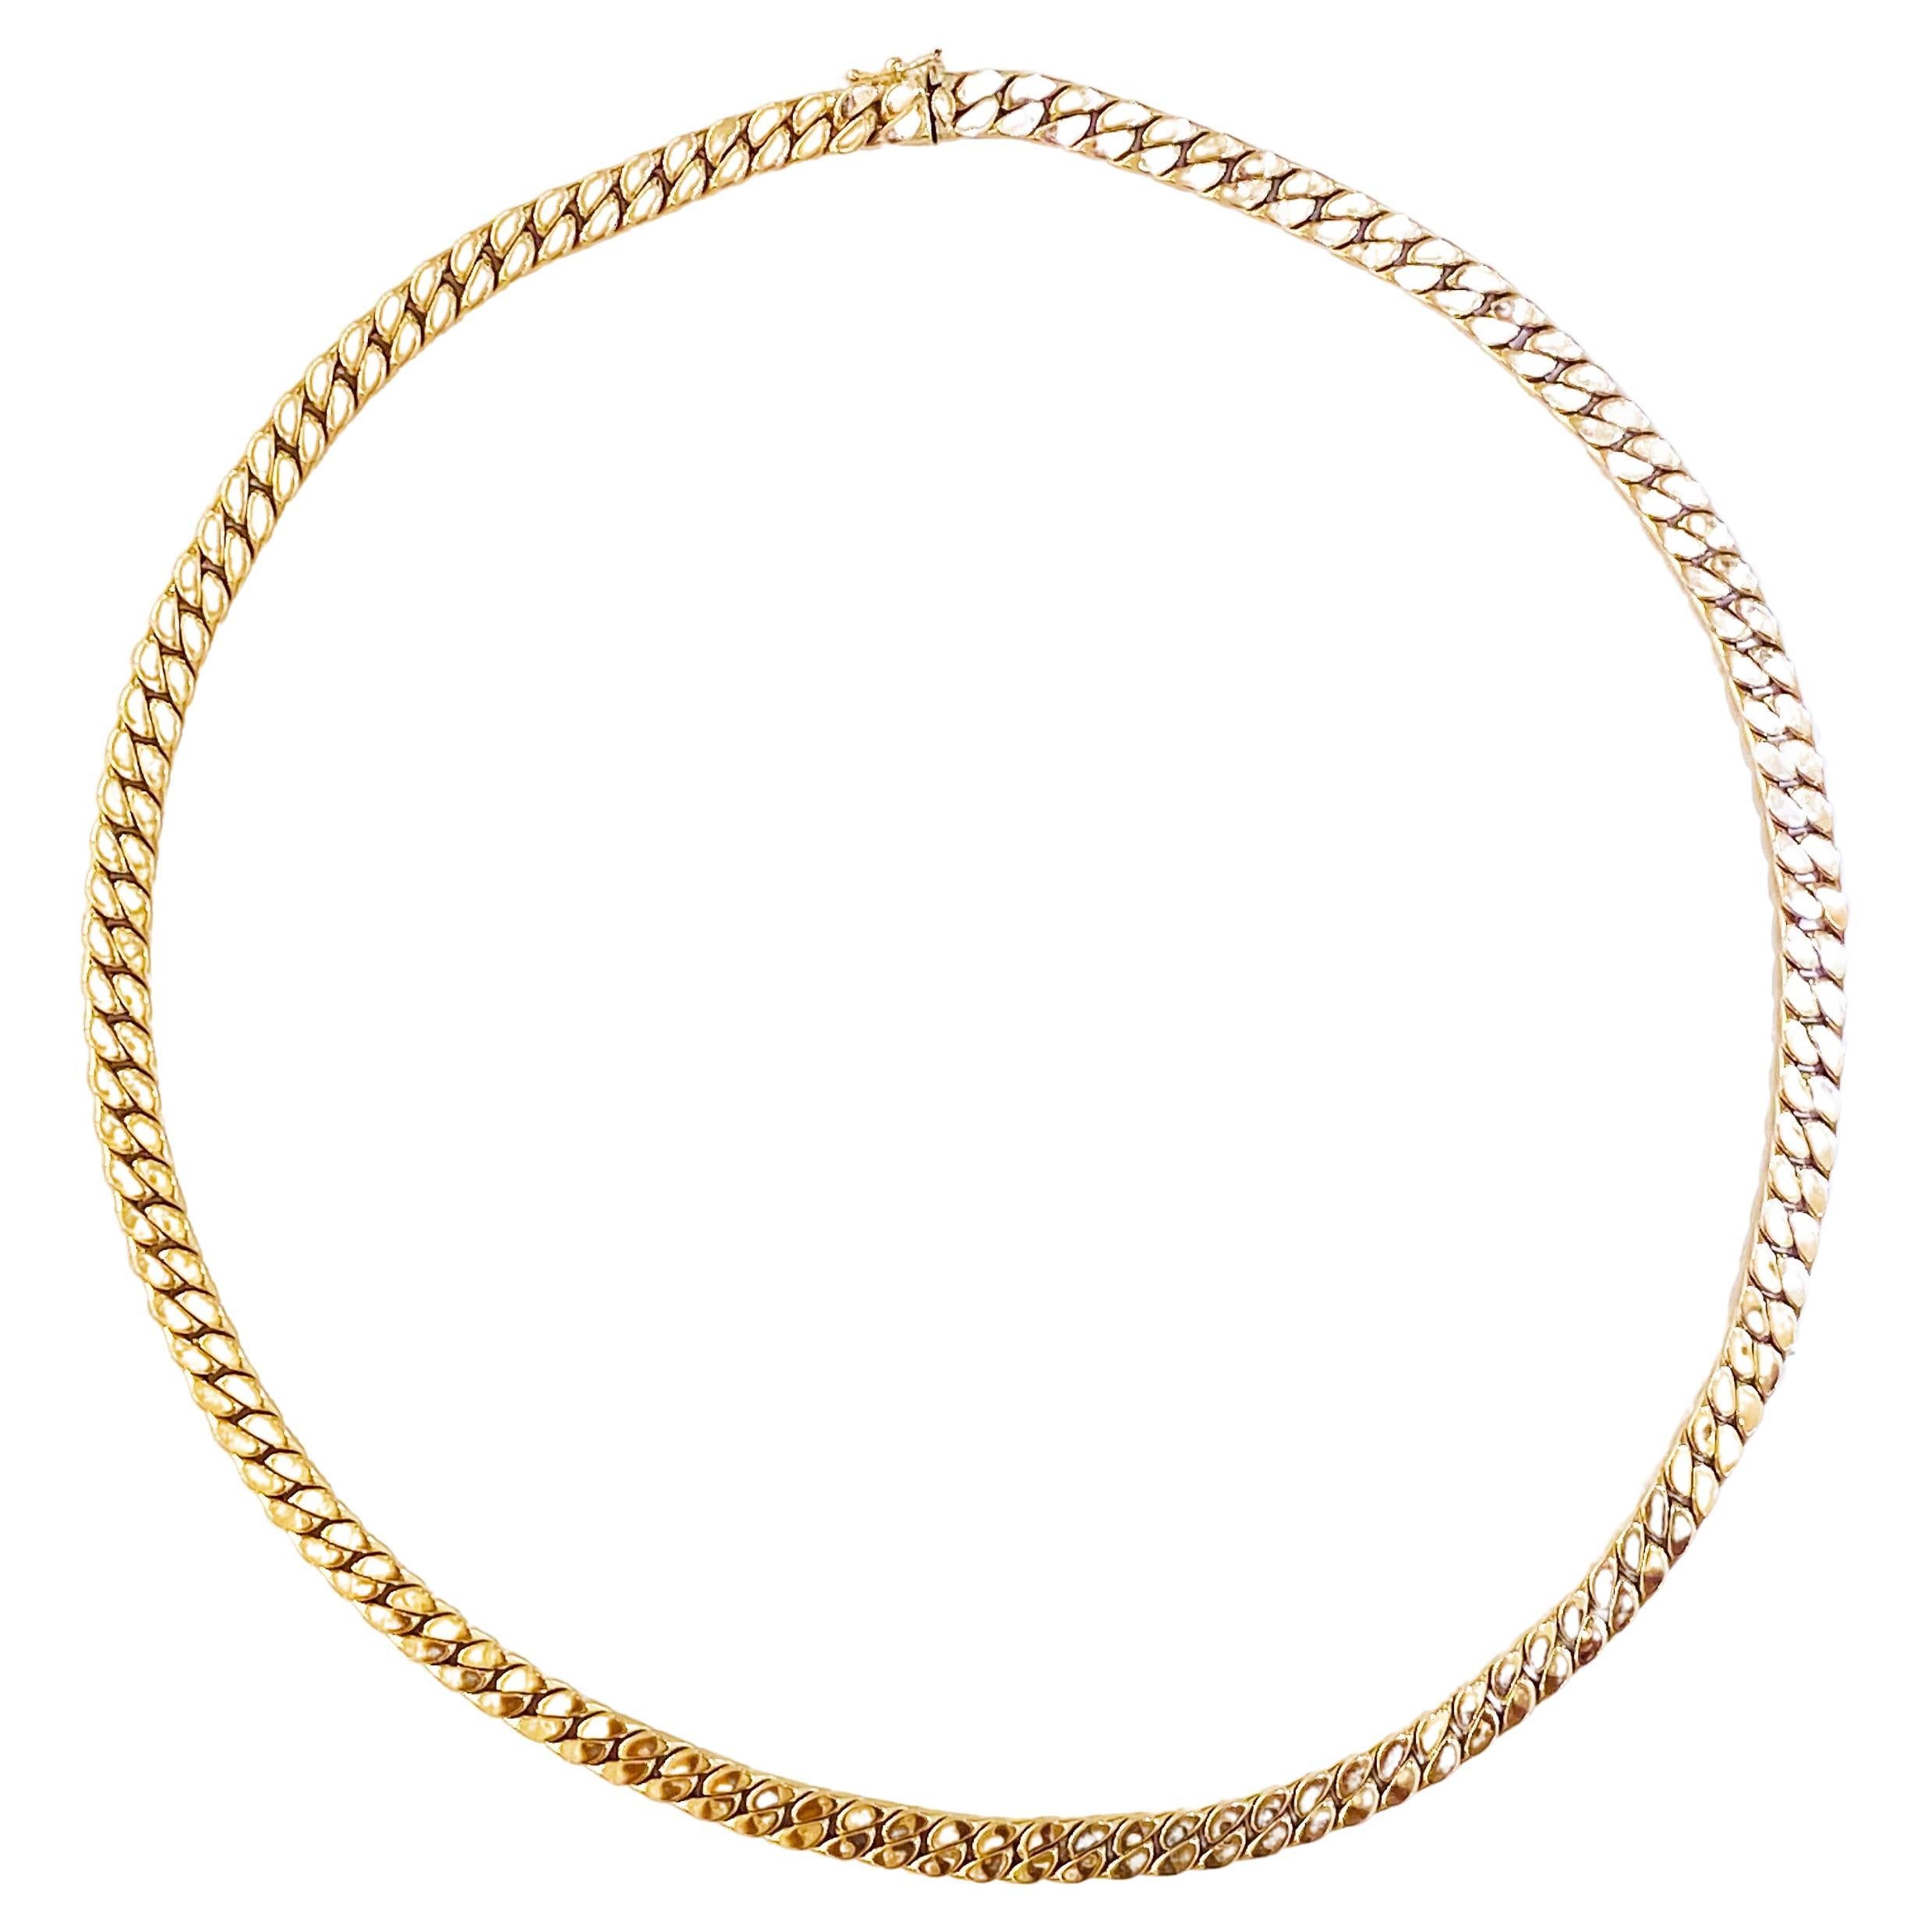 Miami Cuban Chain Necklace 14K Yellow Gold Semi-Solid Chain